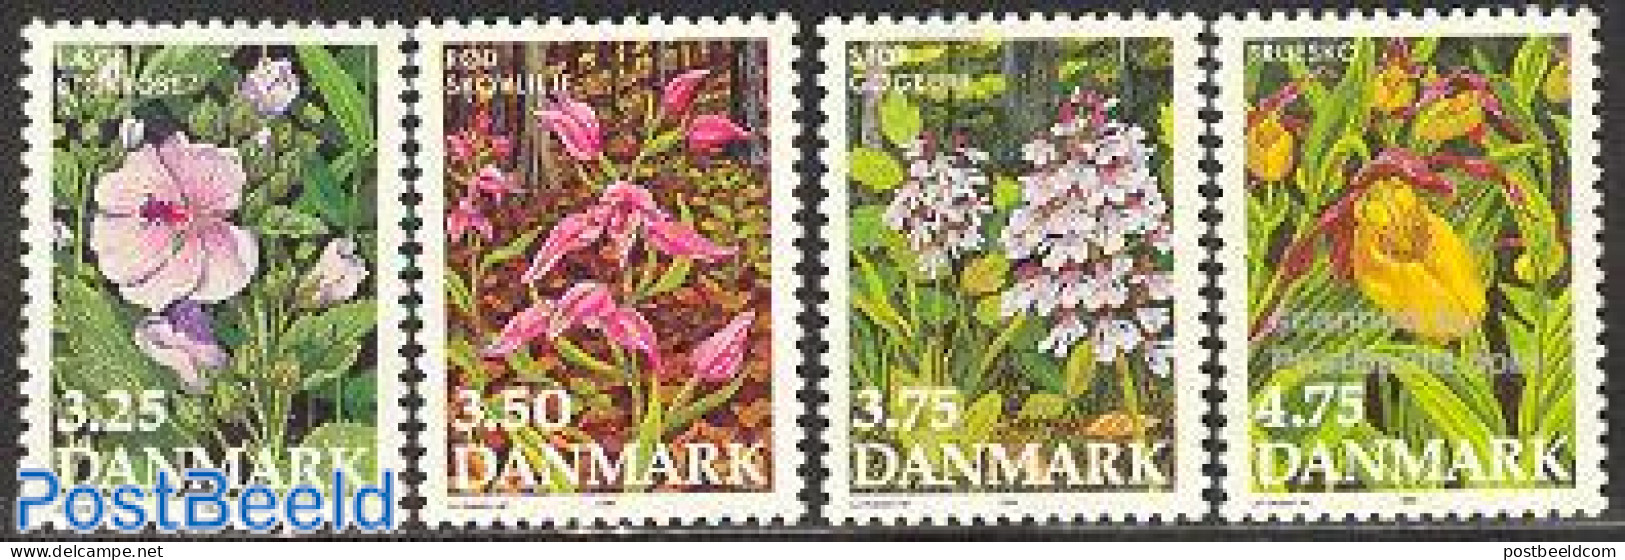 Denmark 1990 Flowers 4v, Mint NH, Nature - Flowers & Plants - Orchids - Ongebruikt